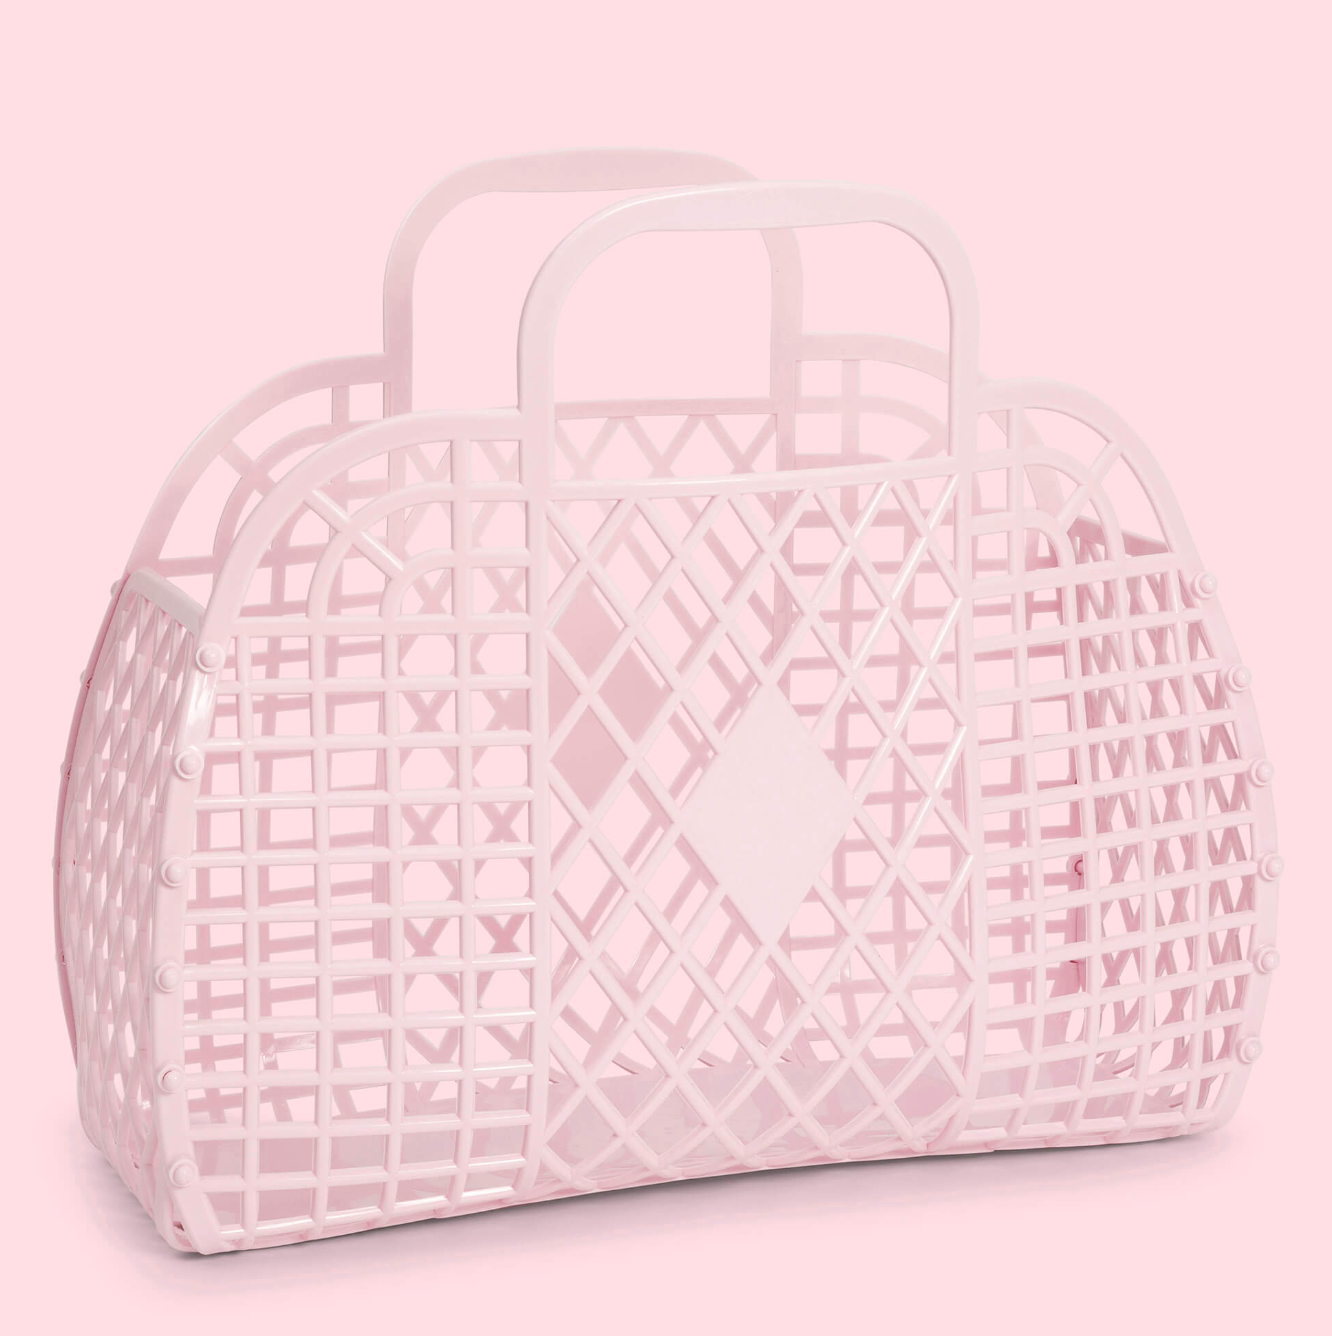 Sunjellies - retro basket - large - pink